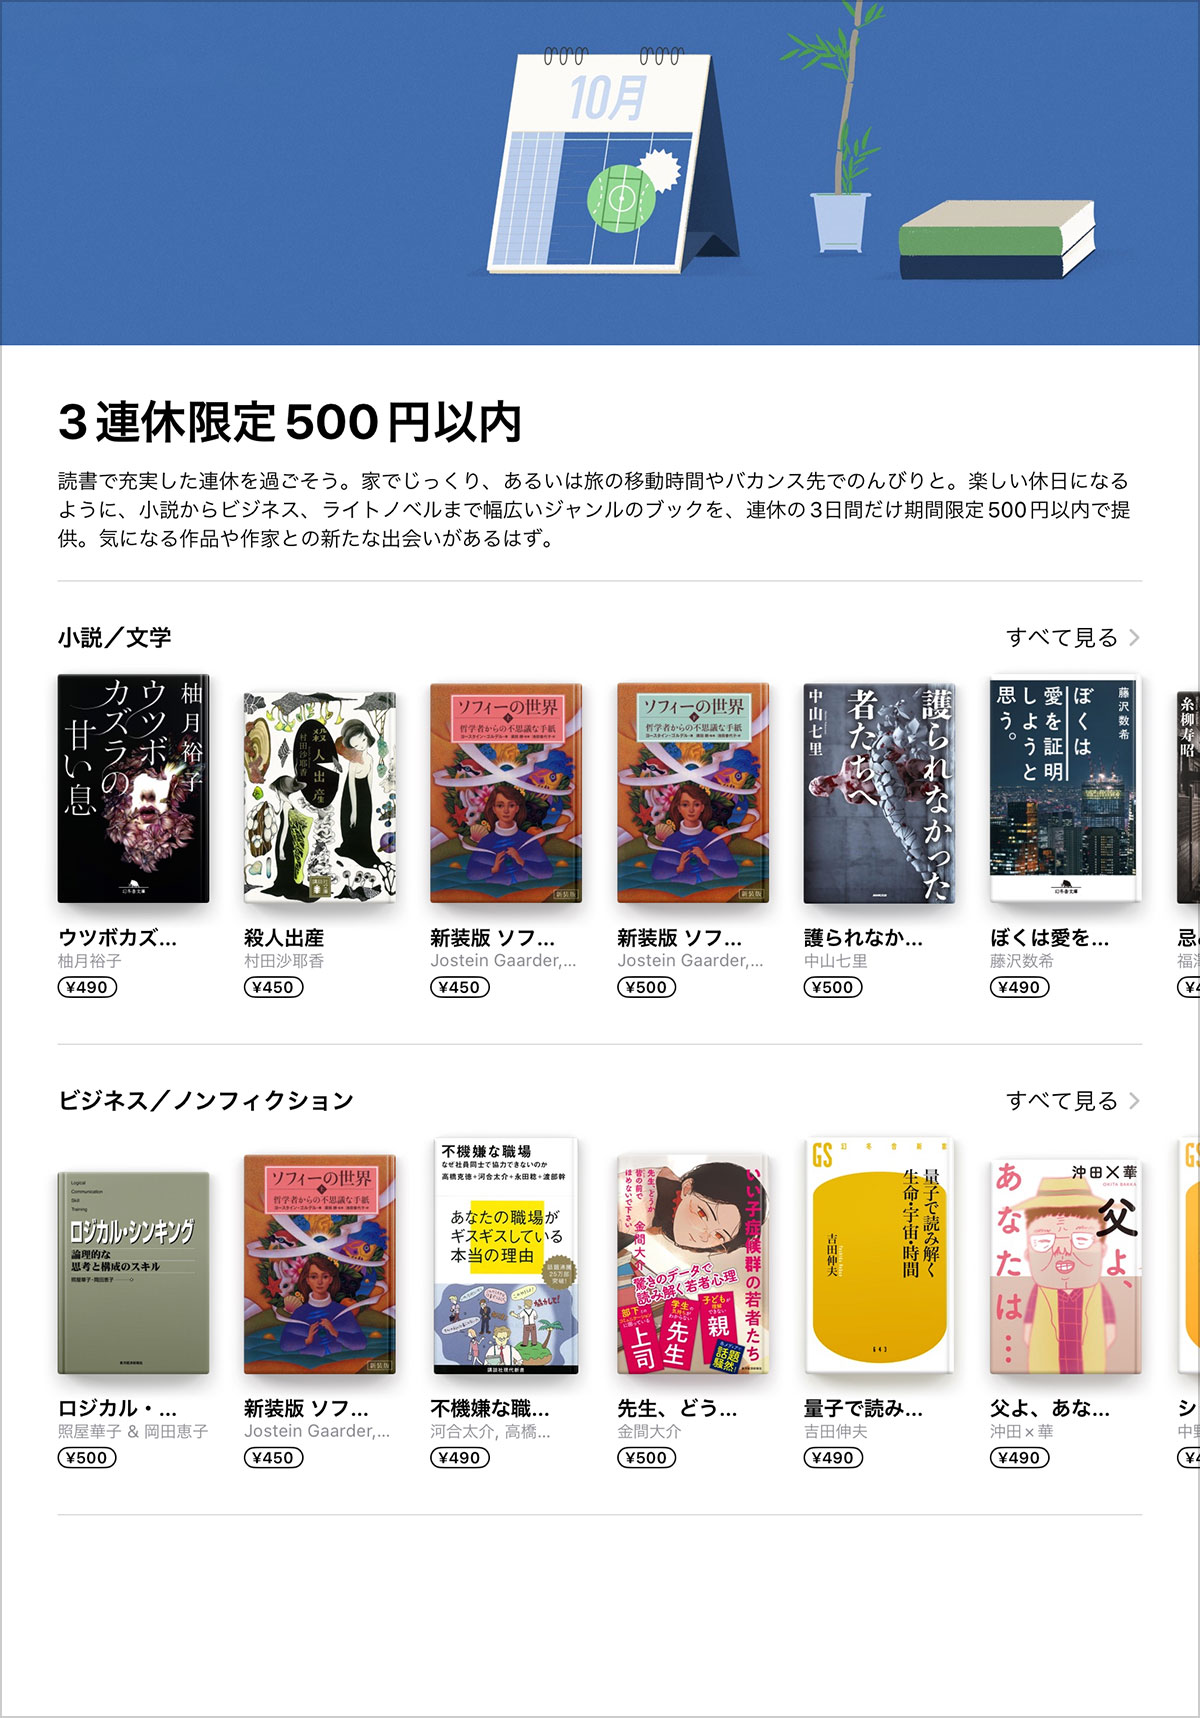 Apple Books 3連休限定500円以内